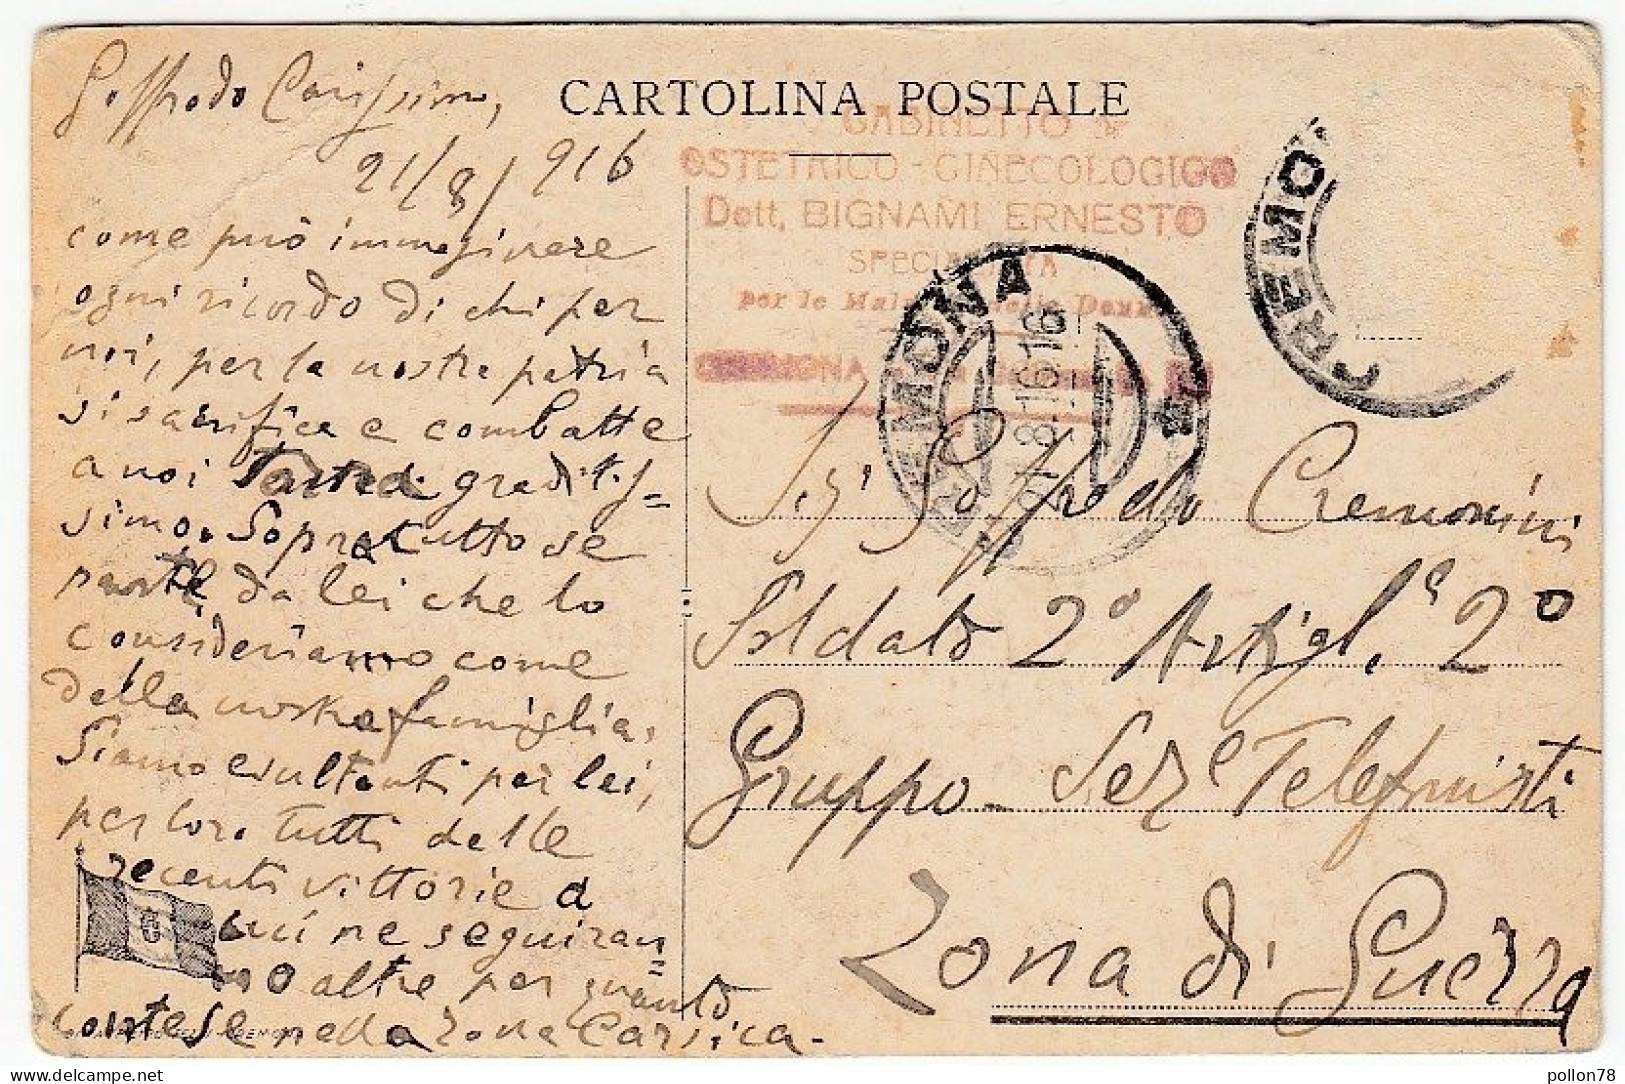 CREMONA - PIAZZA PESCHERIE - 1916 - Vedi Retro - Formato Piccolo - Cremona